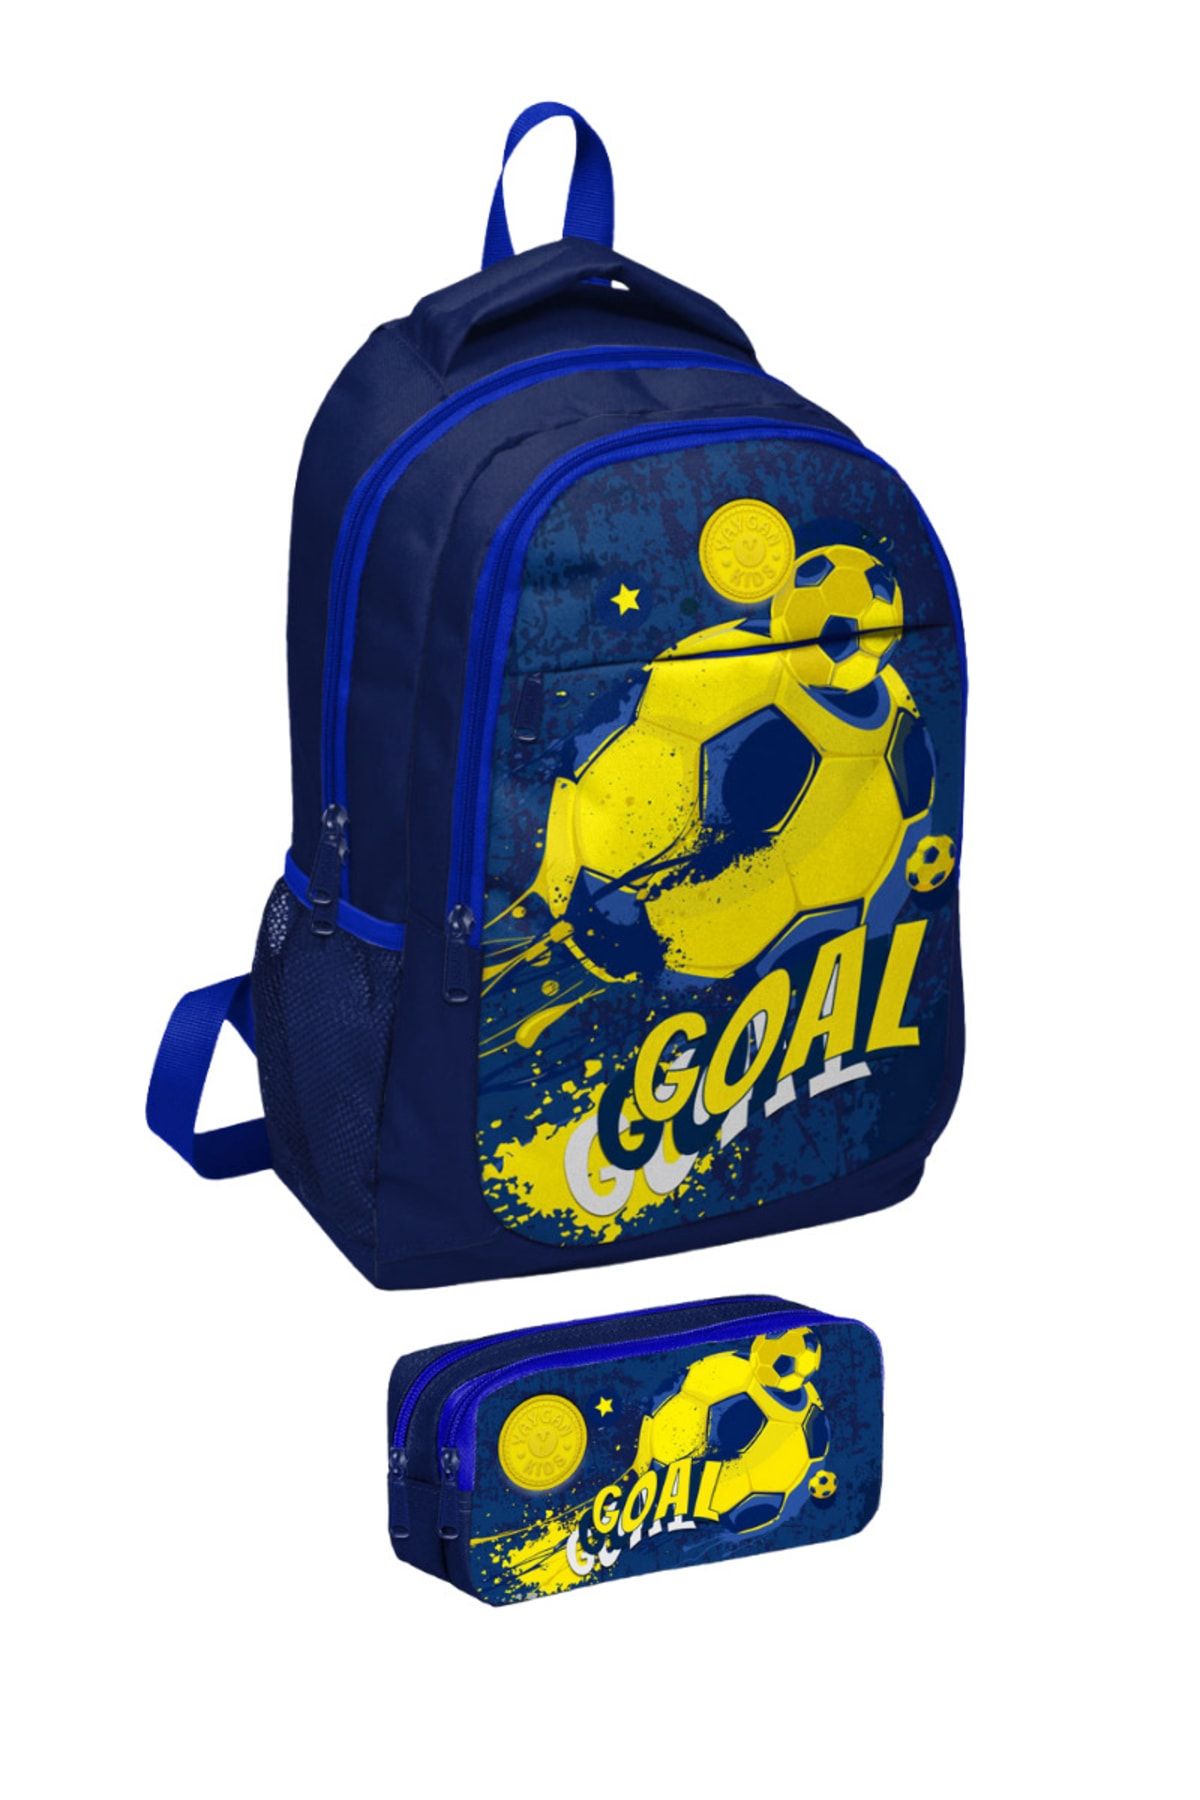 Coral High Sarı Lacivert Goal Desenli Okul Sırt Çantası Ve Kalemlik 2 Li Set